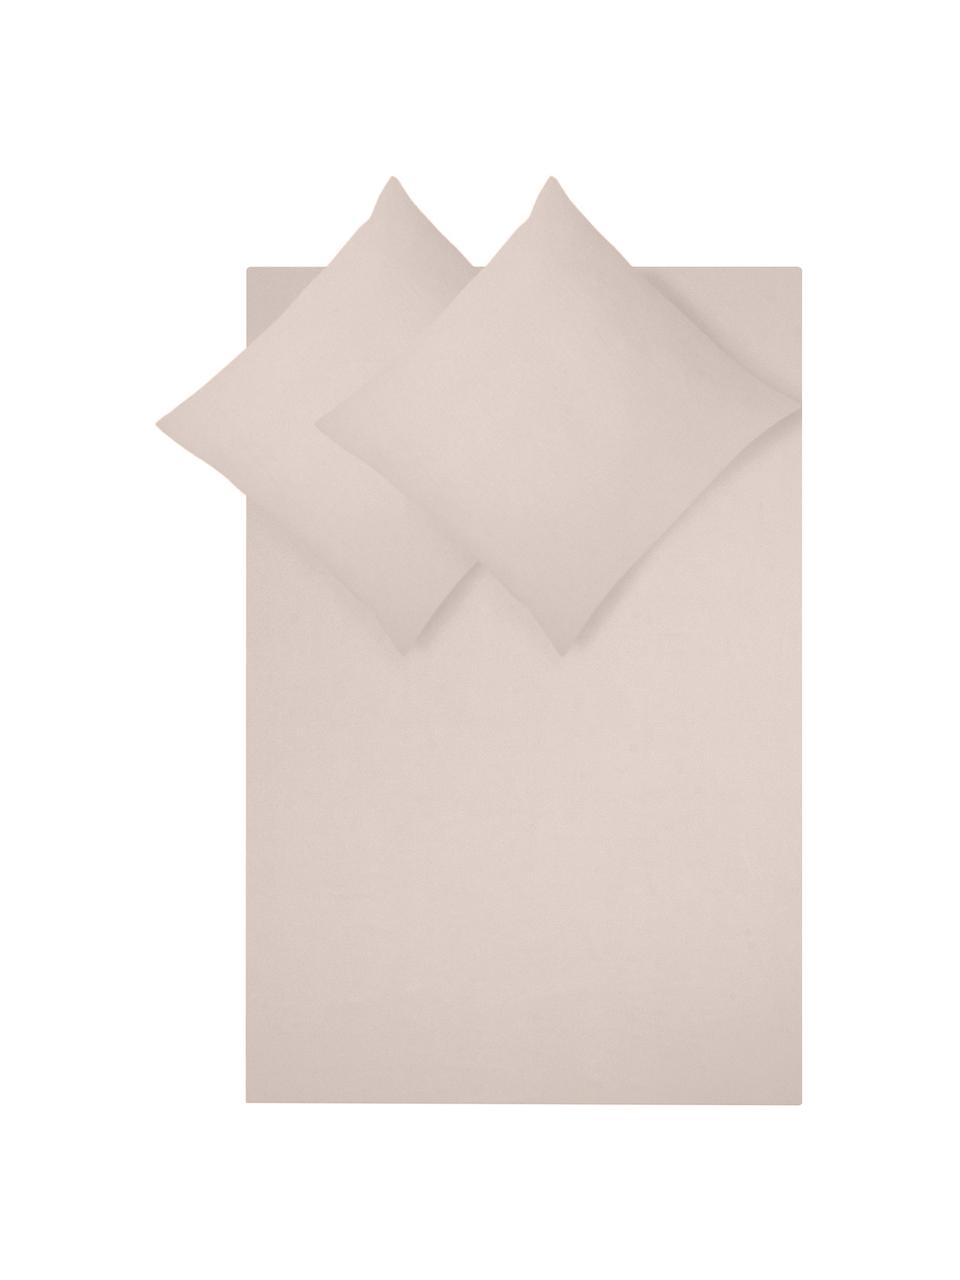 Flanell-Bettwäsche Biba in Beige, Webart: Flanell Flanell ist ein k, Beige, 135 x 200 cm + 1 Kissen 80 x 80 cm